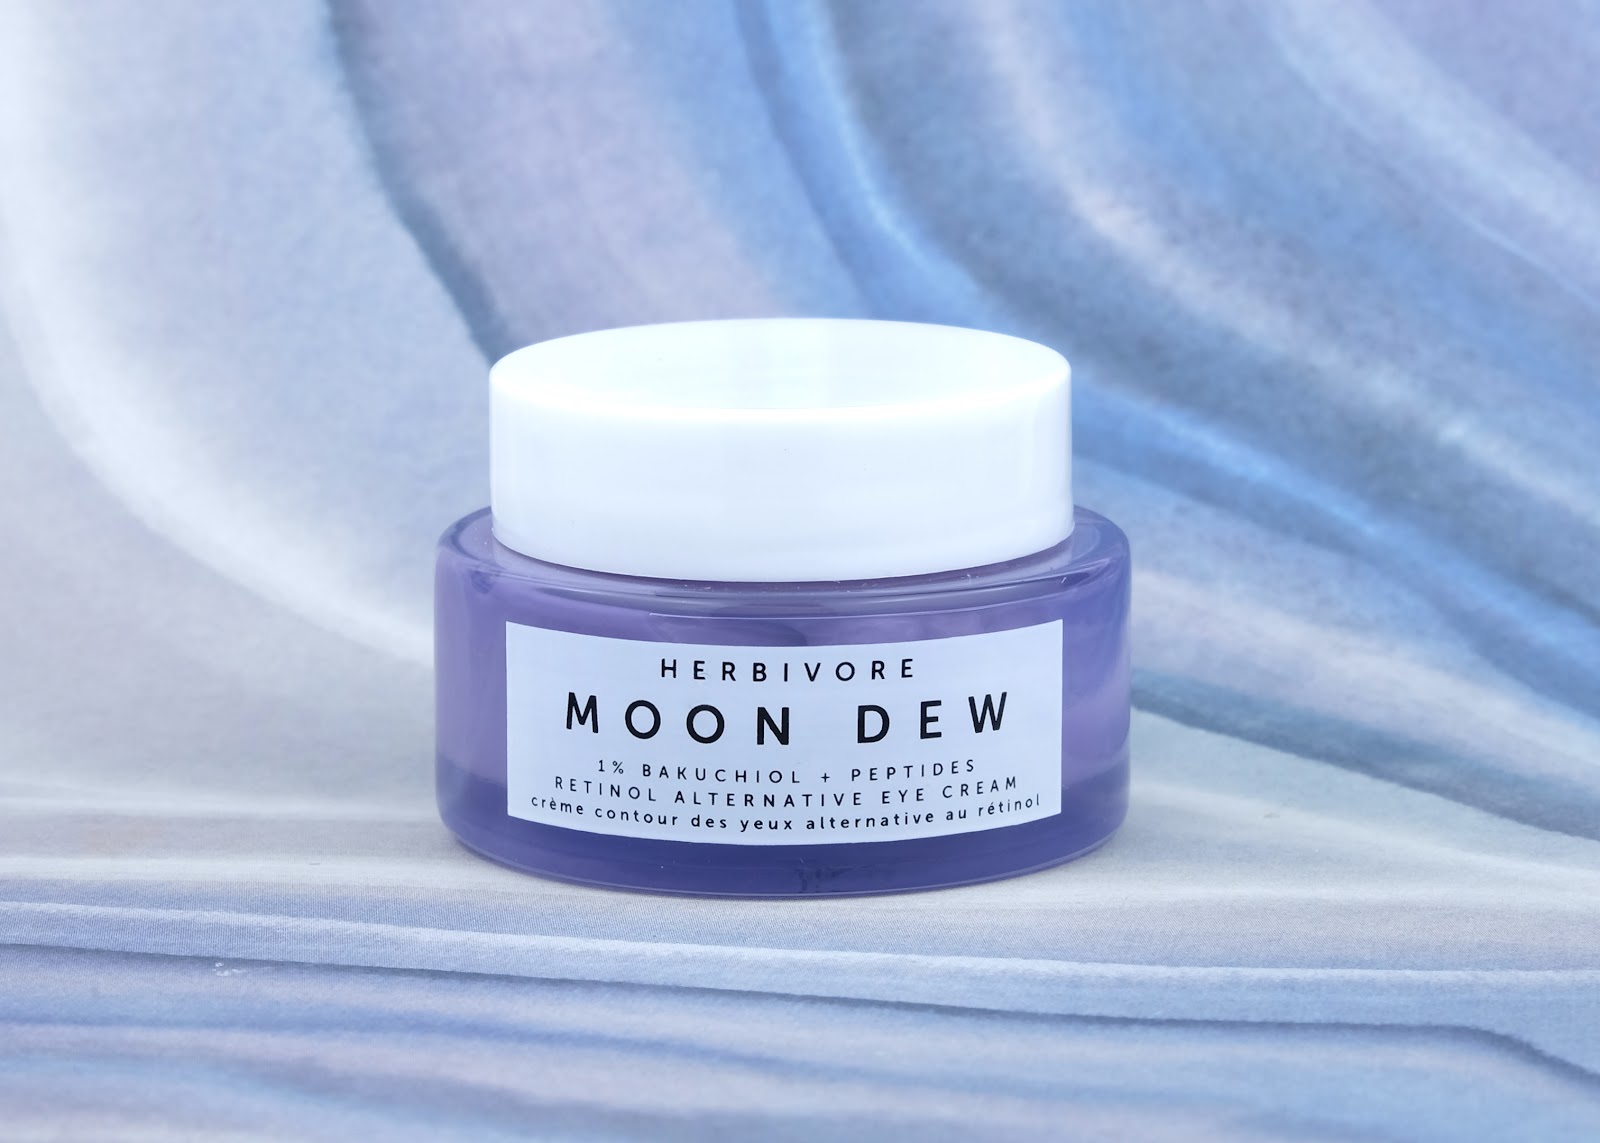 Herbivore | Moon Dew 1% Bakuchiol + Peptides Retinol Alternative Eye Cream: Review